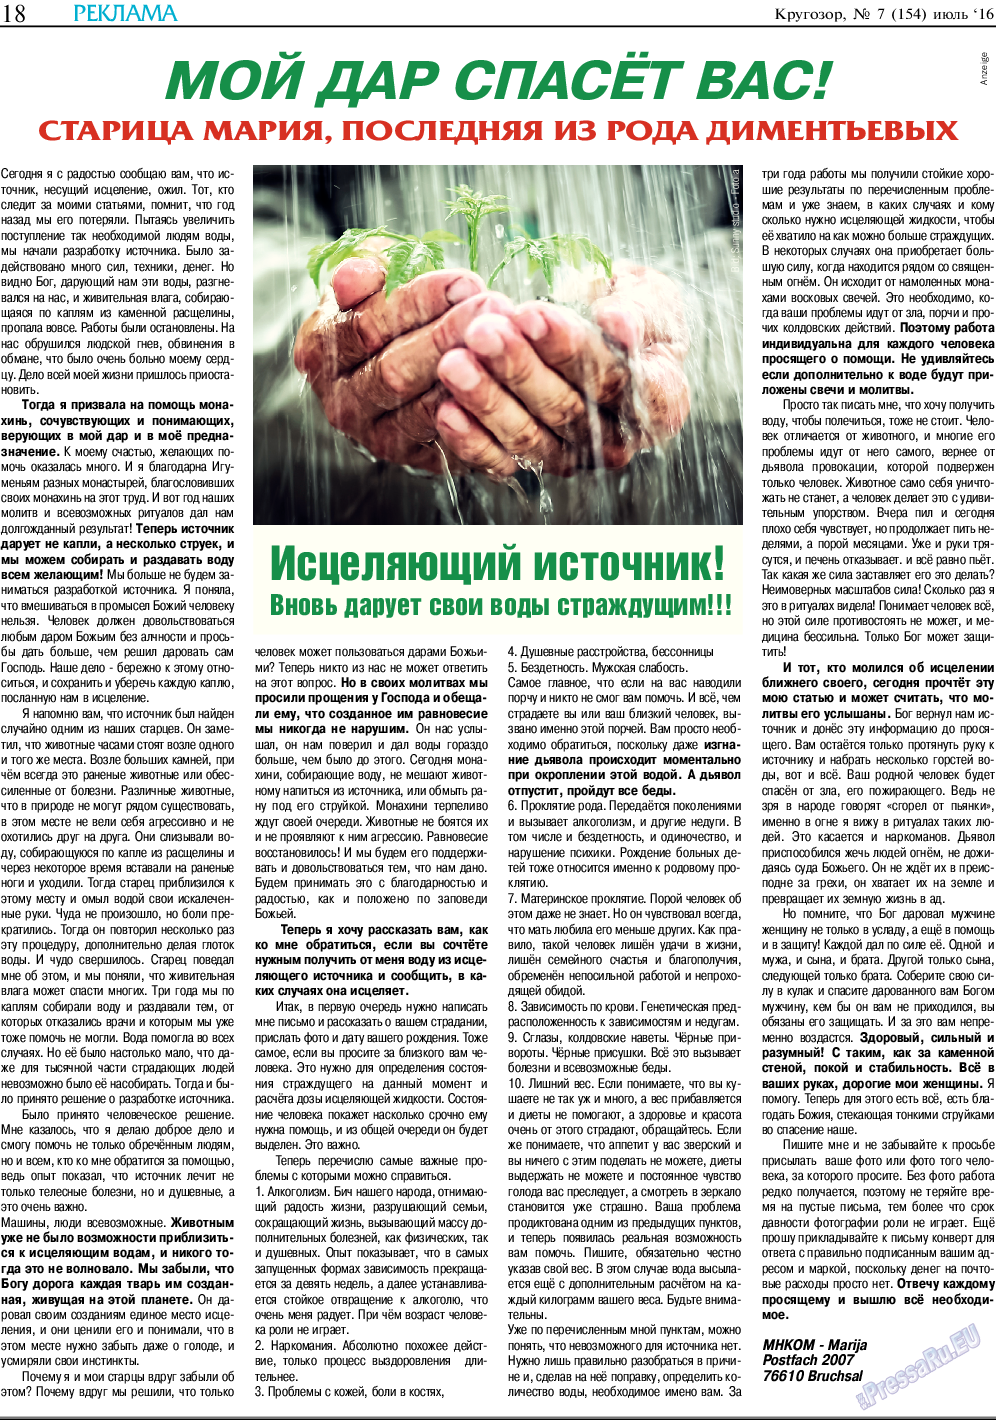 Кругозор, газета. 2016 №7 стр.18